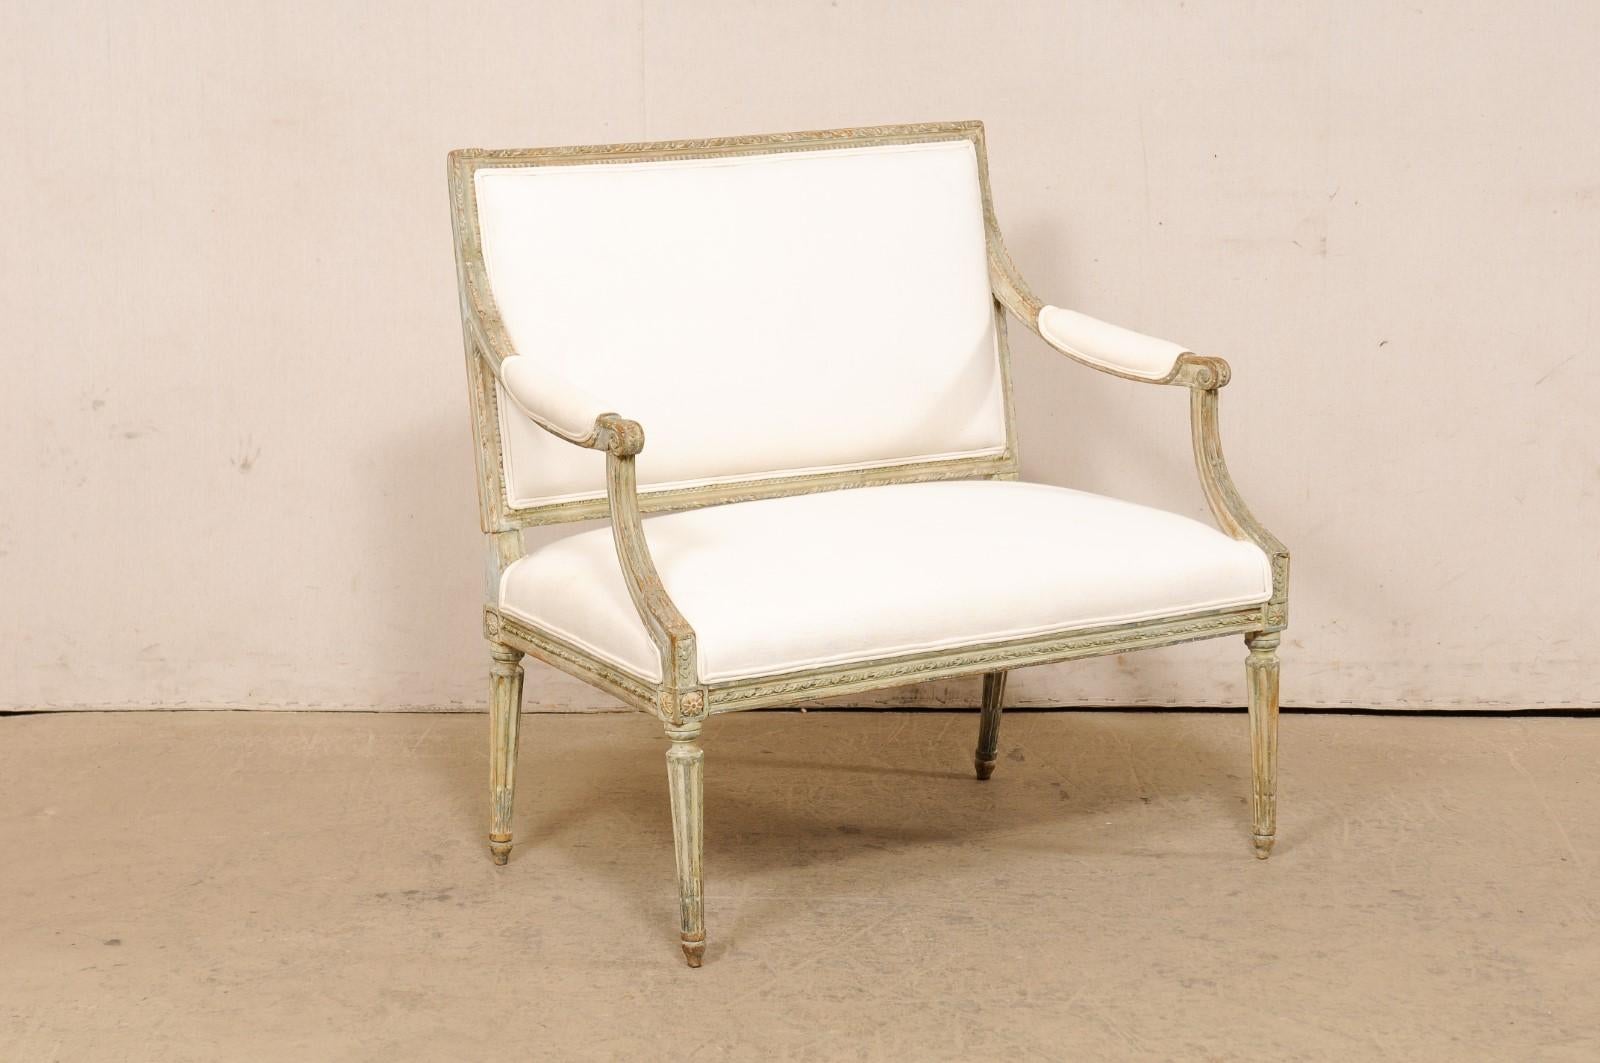 Marquise française de style Louis XVI en bois sculpté et tapisserie d'ameublement du 19ème siècle. Cette ancienne chaise et demie de France, souvent appelée marquise (une large chaise à fauteuils), met en valeur tout le vocabulaire décoratif de